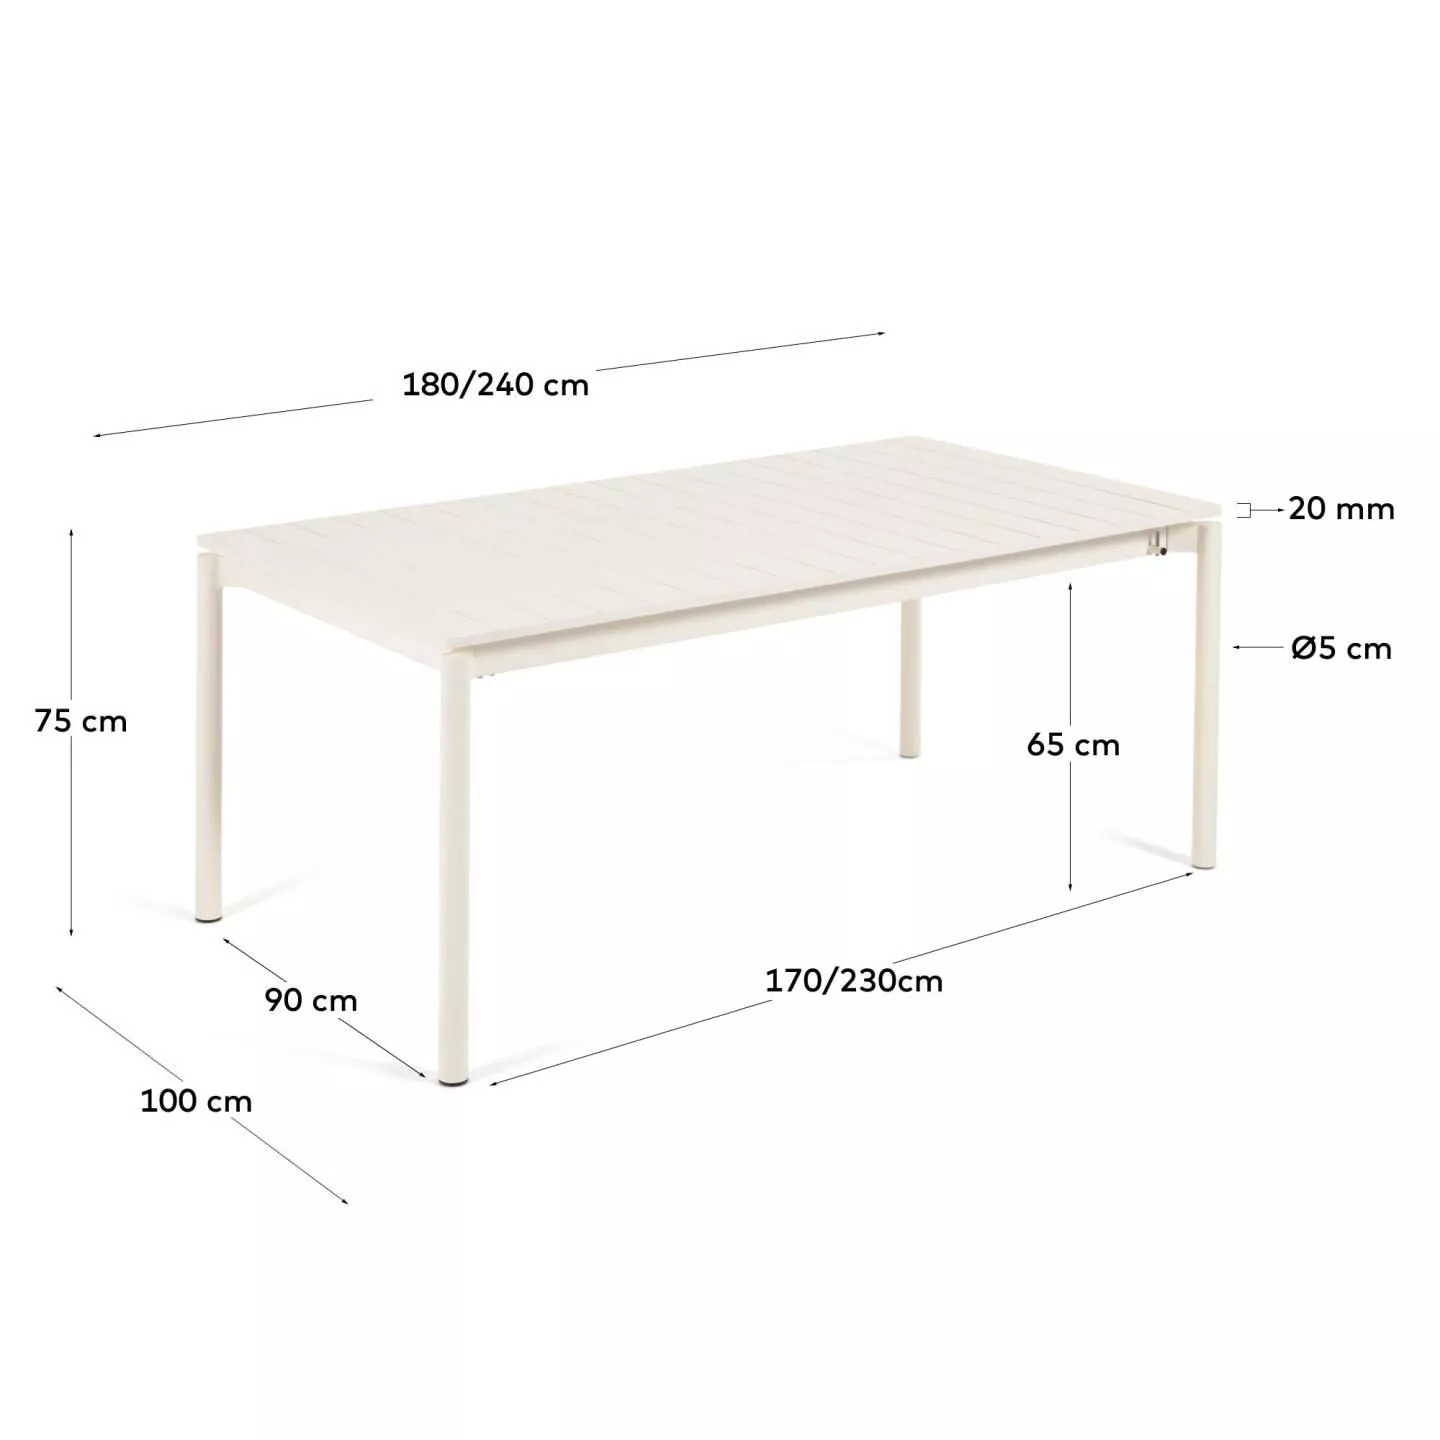 Раздвижной стол La Forma Zaltana белый 180 x 100 см